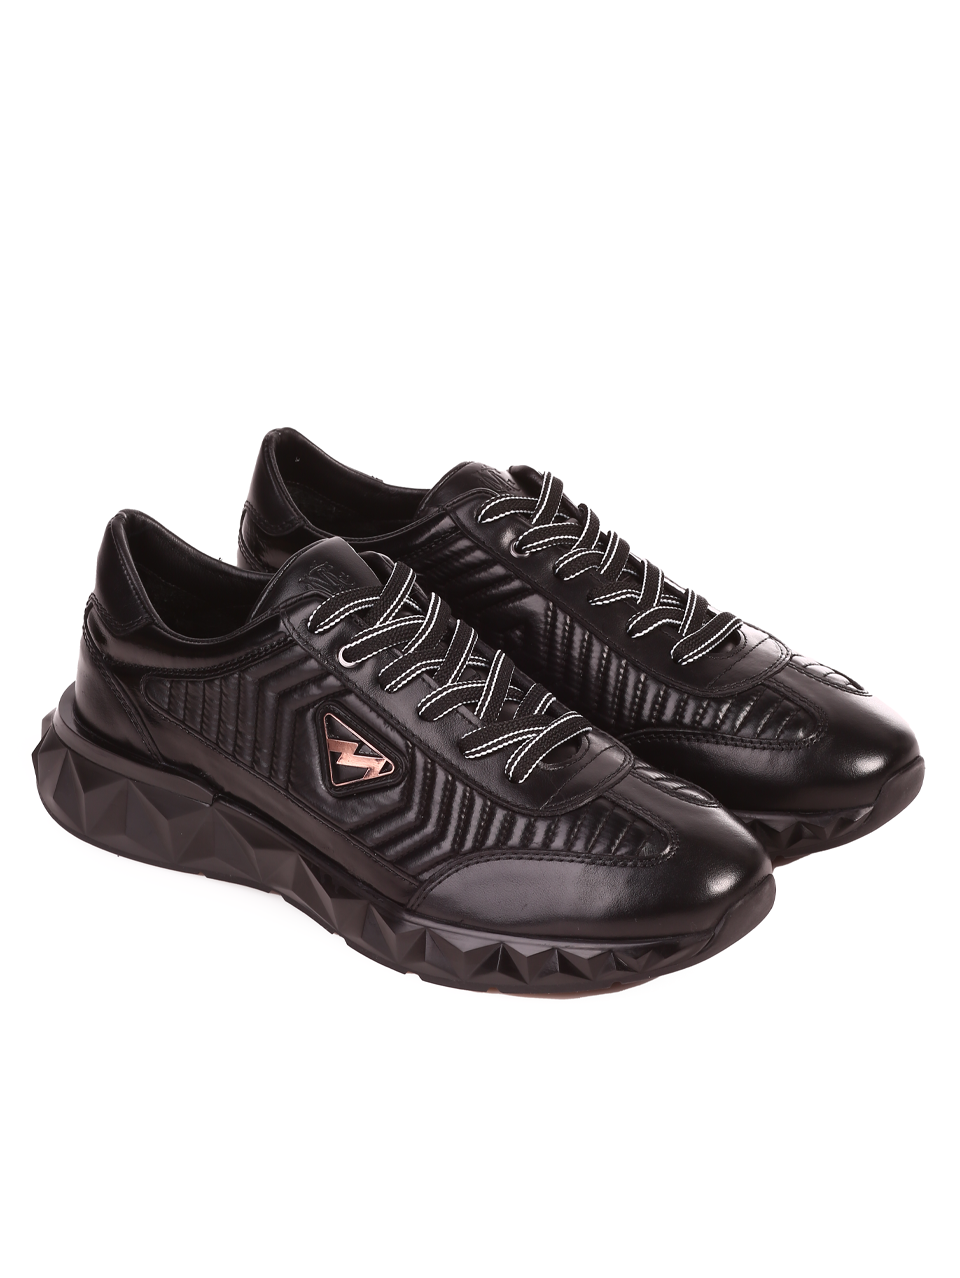 Ежедневни мъжки обувки от естествена кожа 152-19498 black